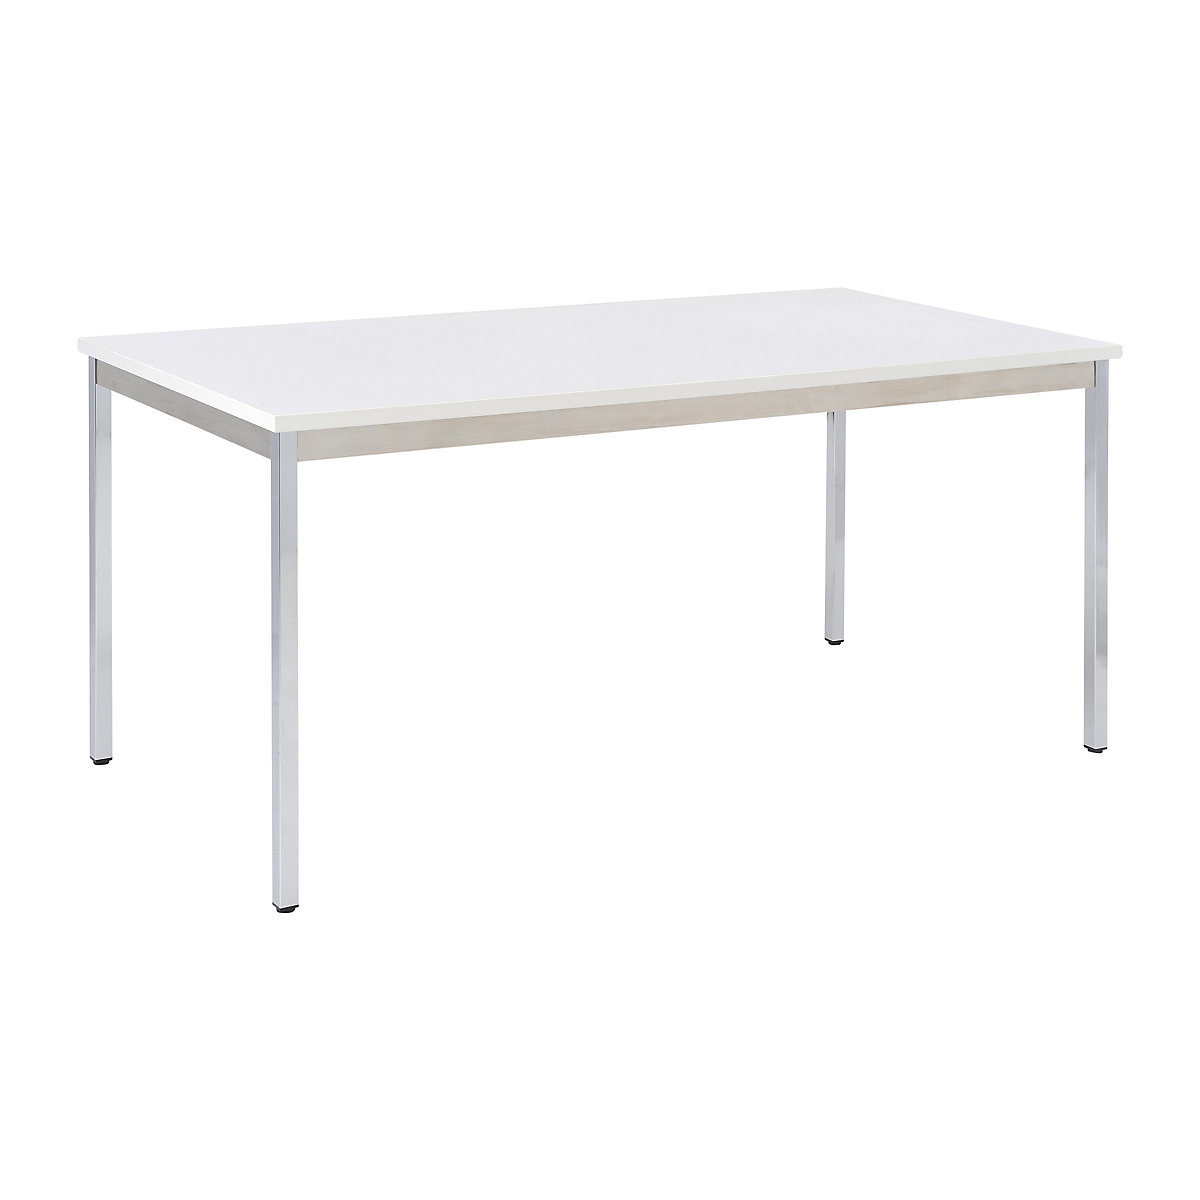 Table polyvalente – eurokraft basic, rectangulaire, l x h 1400 x 740 mm, profondeur 700 mm, plateau gris clair, piétement chromé-14